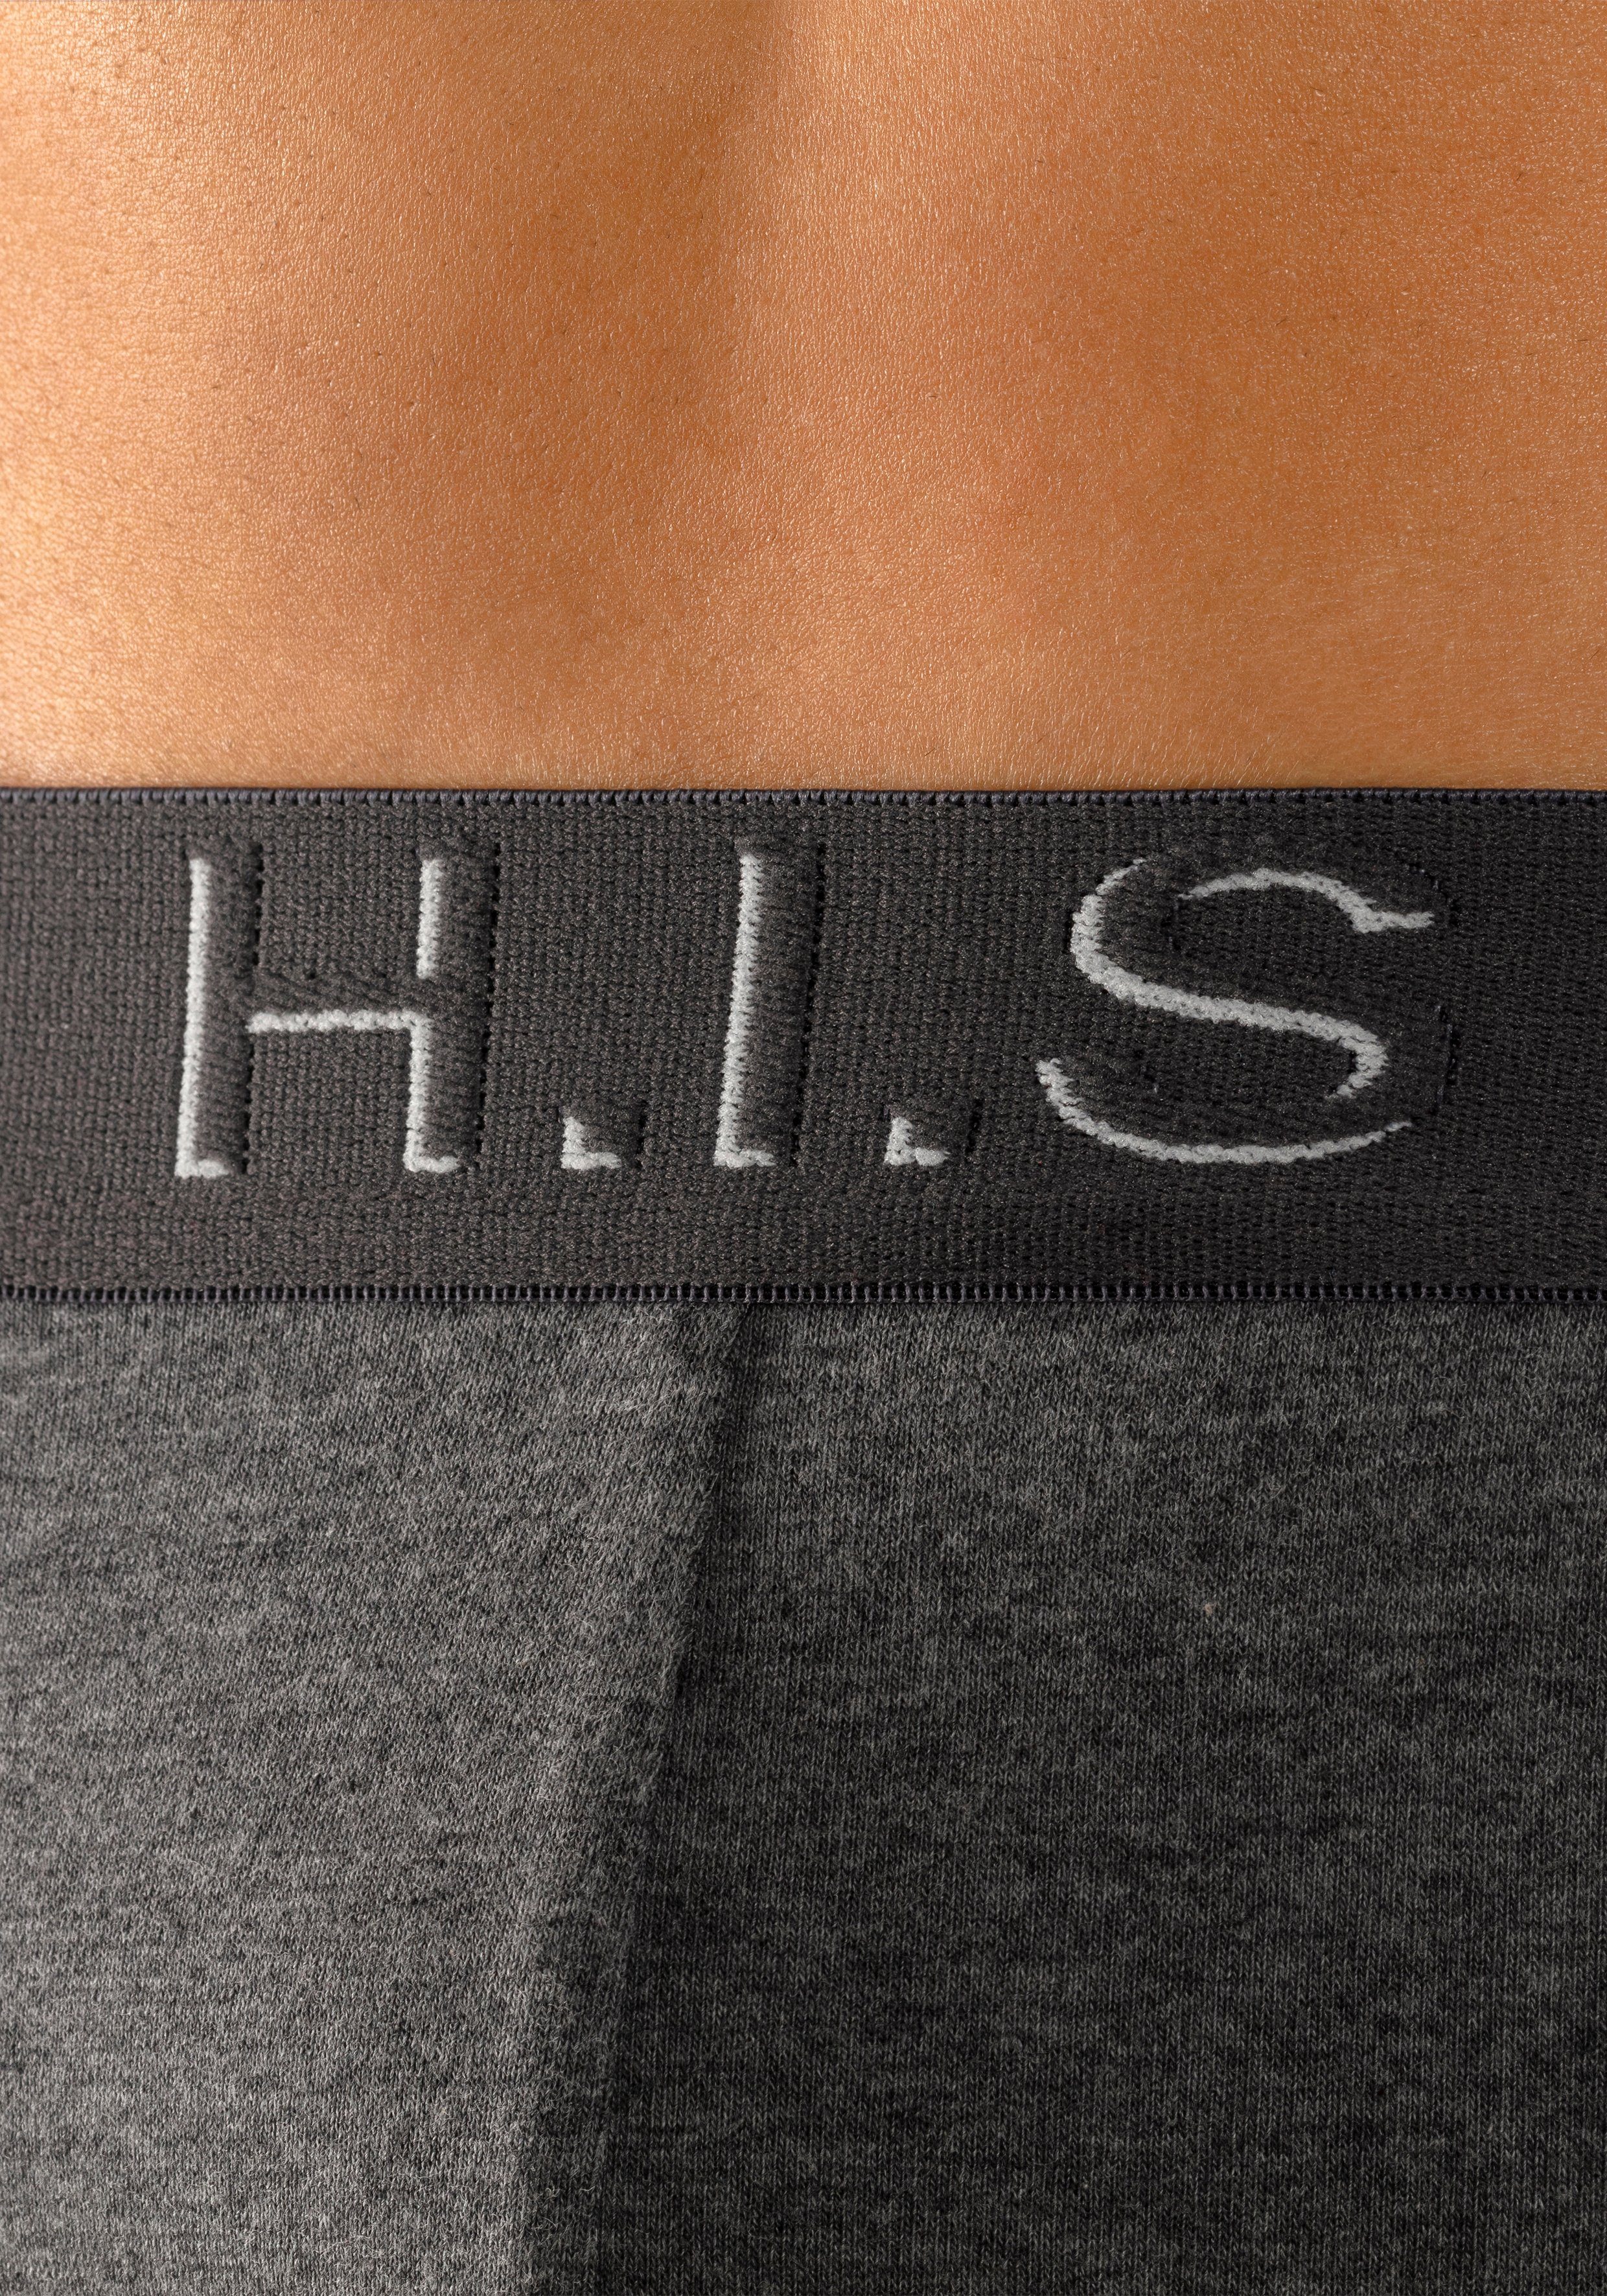 H.I.S Boxershorts (Packung, 5-St) in Hipster-Form schwarz, am rot, Logoschriftzug Effekt grau-meliert, blau mit navy, 3D Webbund mit